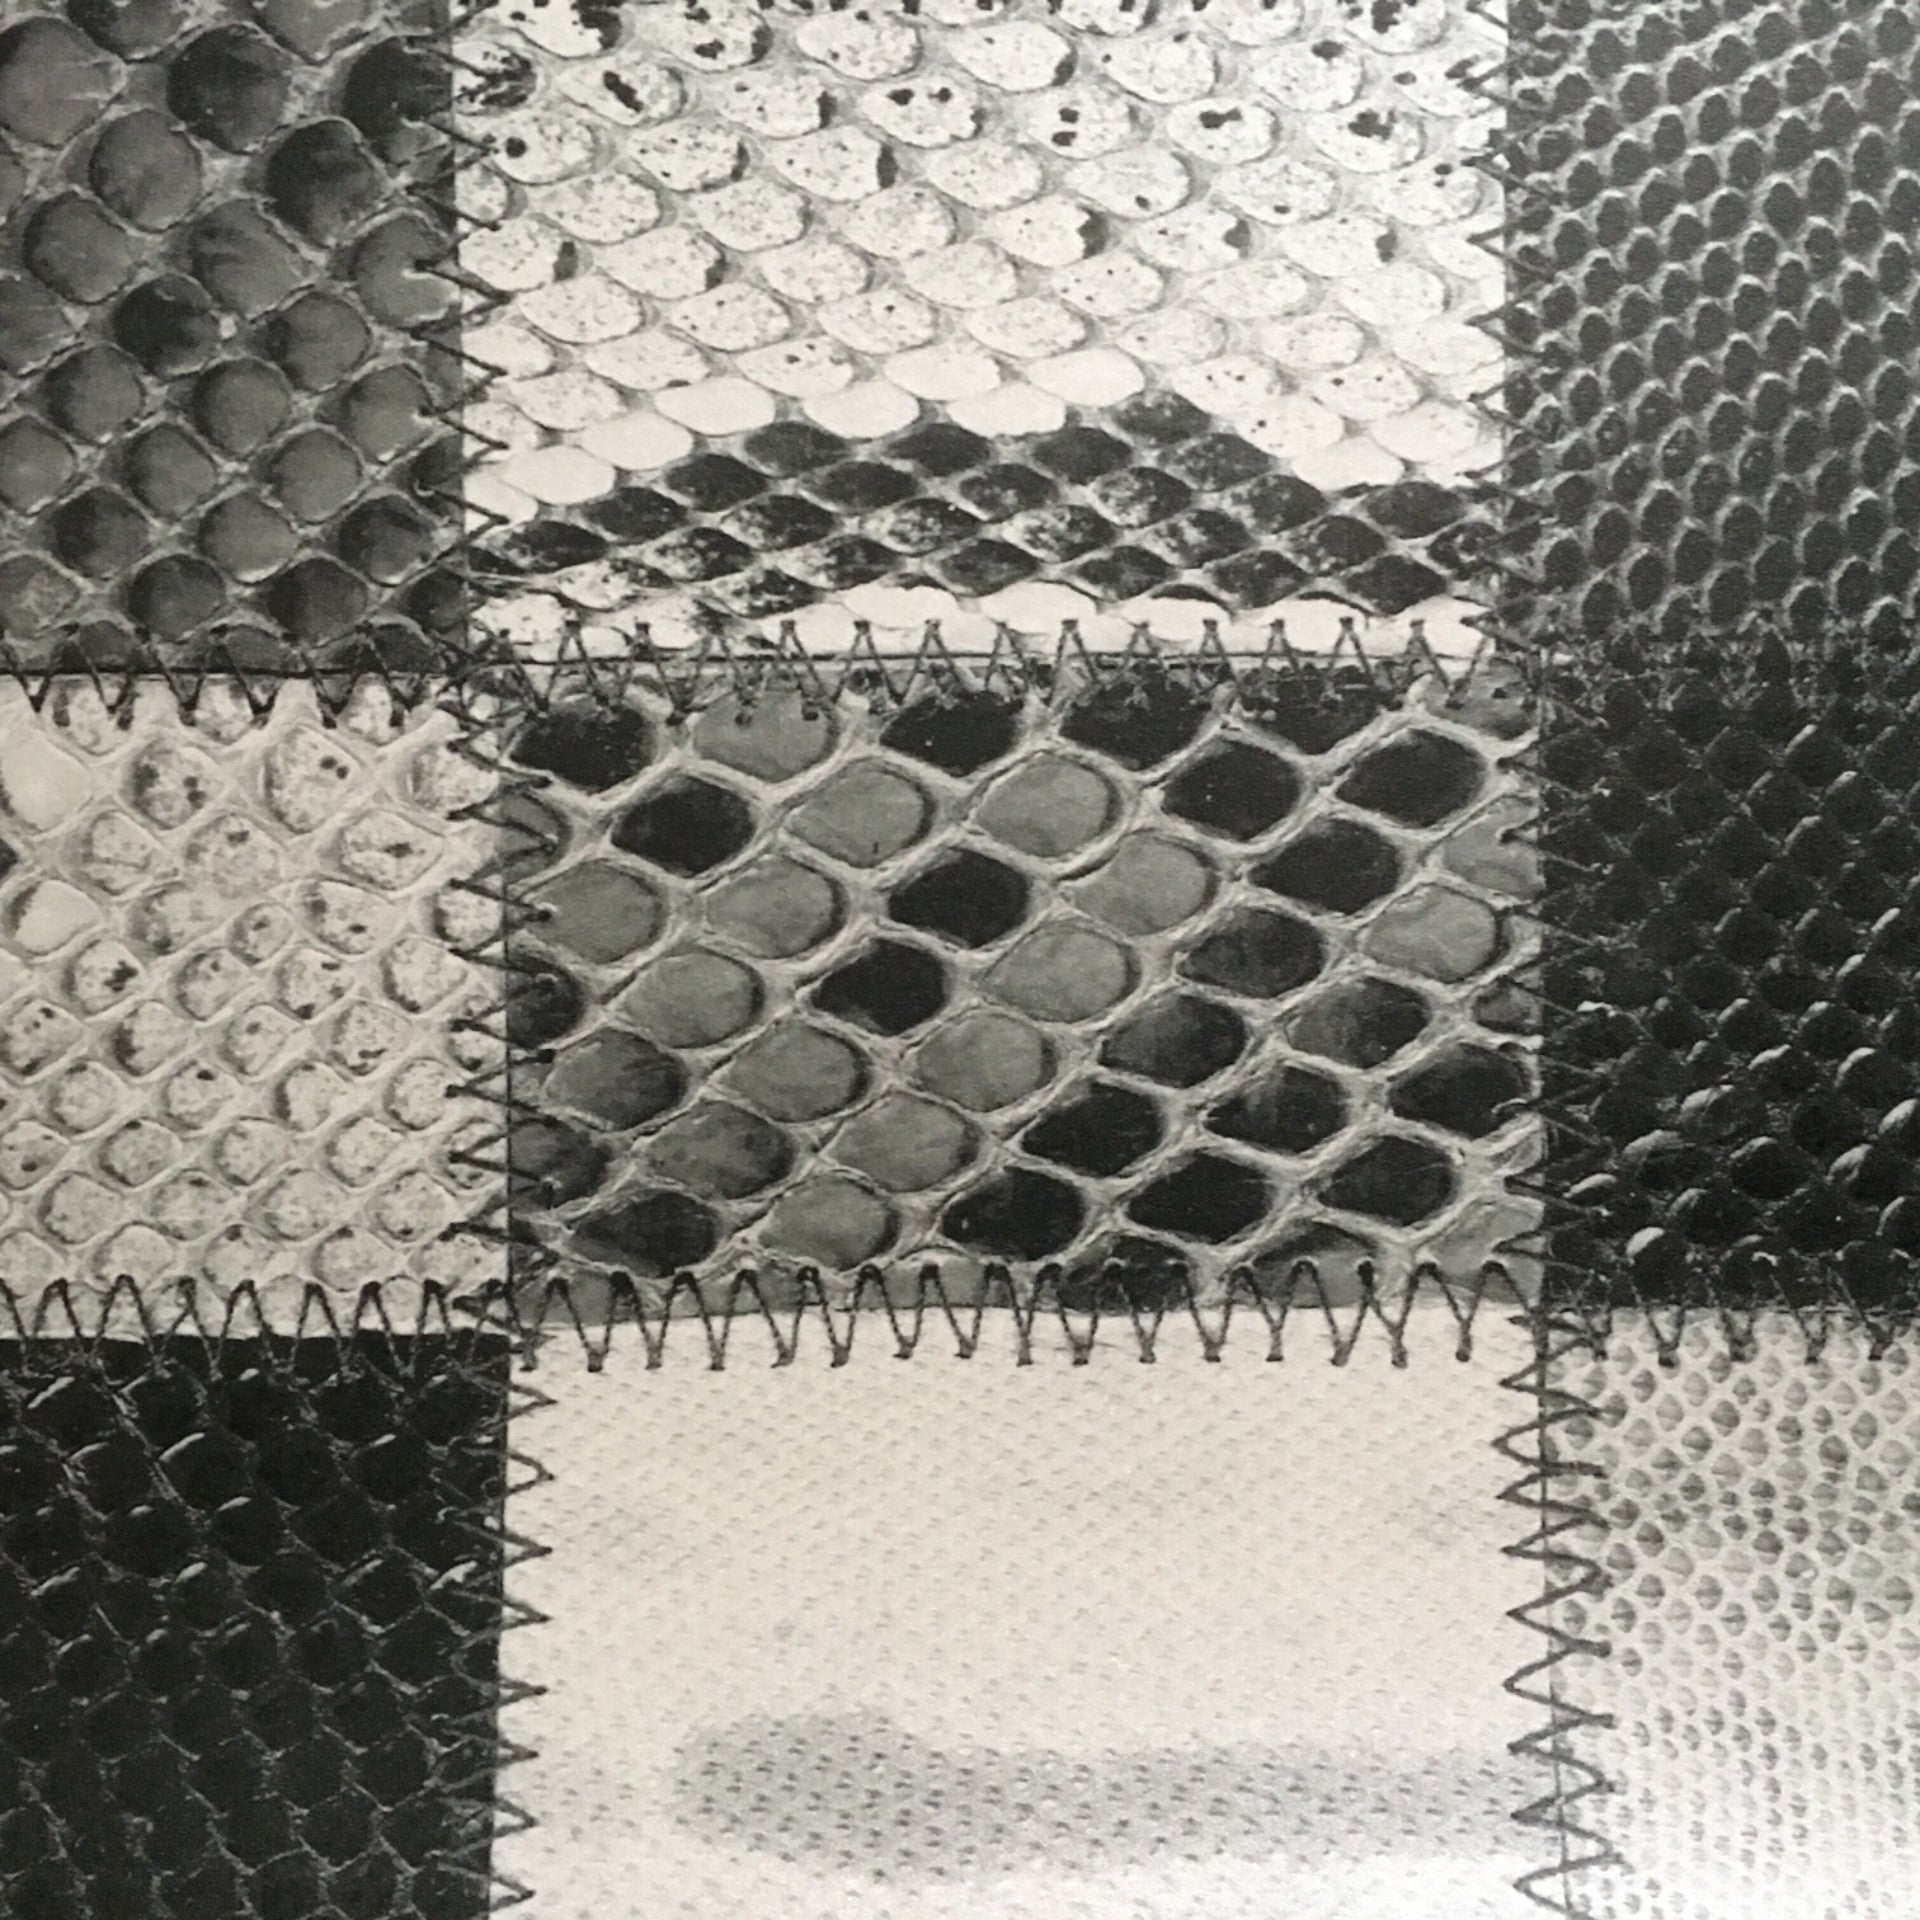 Vintage Snakeskin Patchwork Wallpaper